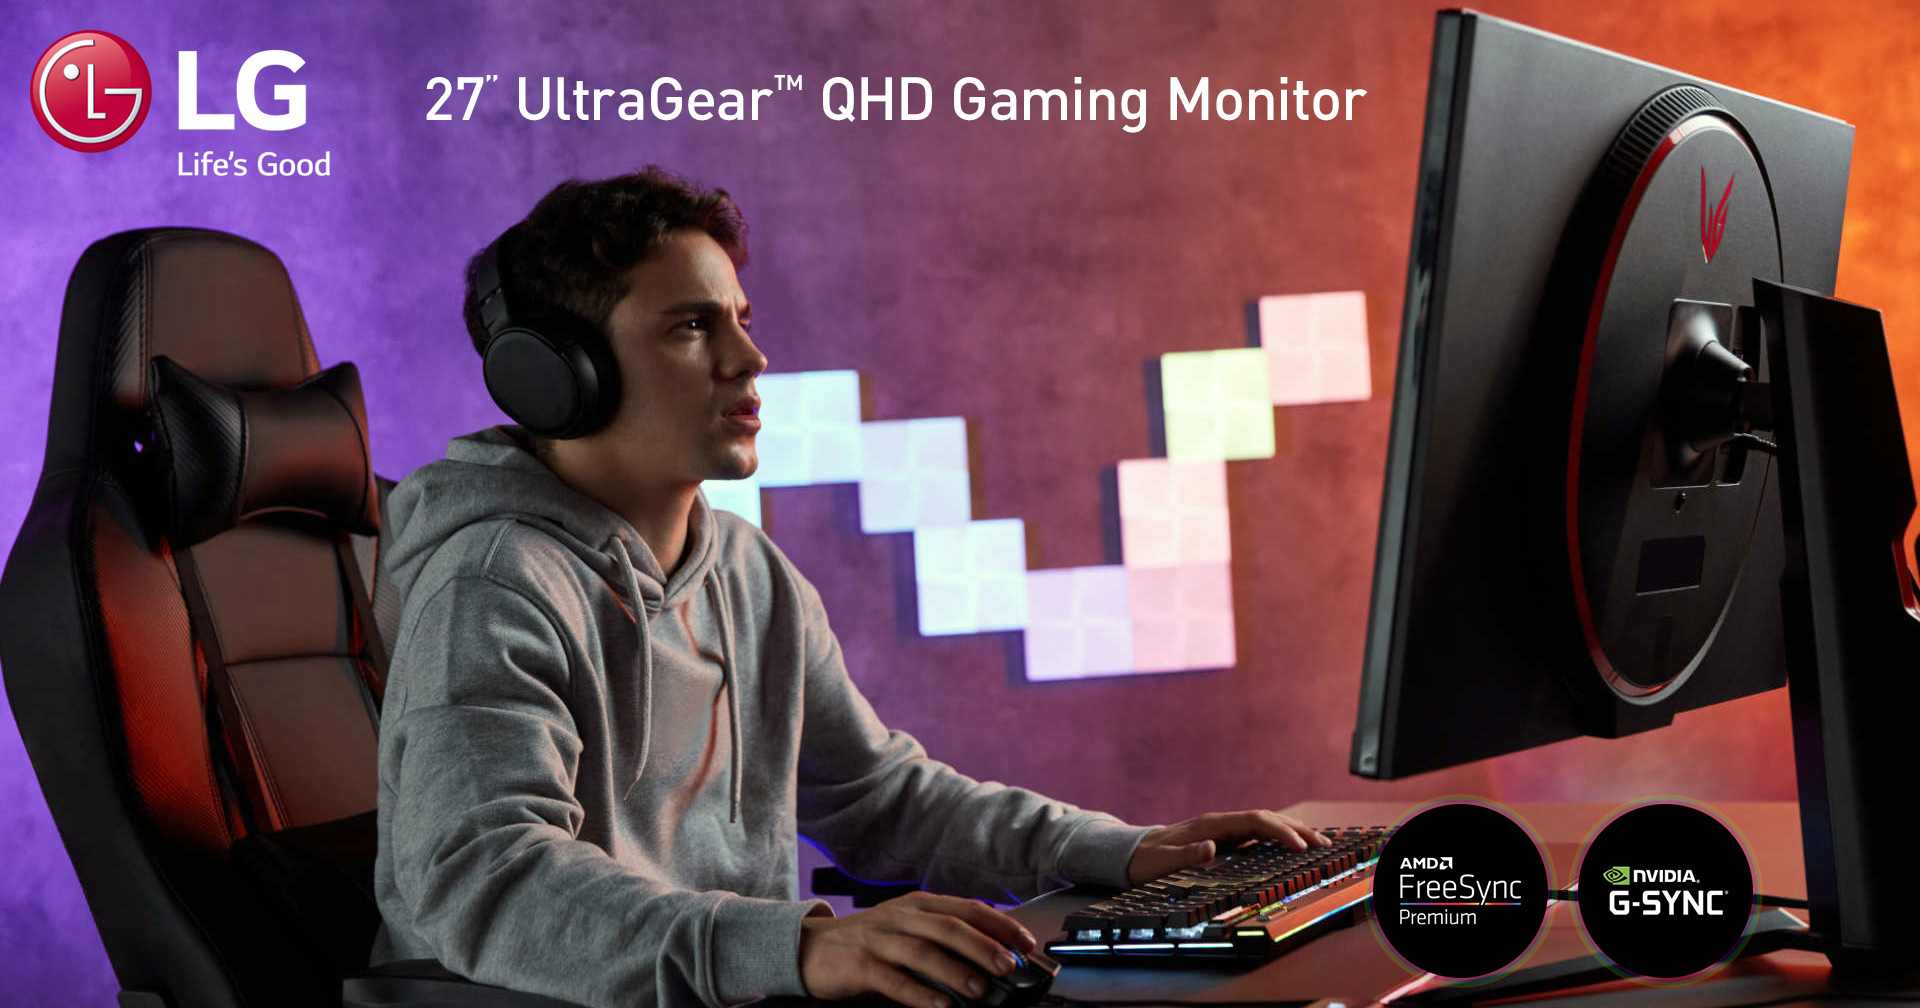 LG 27GR75Q-B 27-Inch UltraGear QHD Gaming Monitor